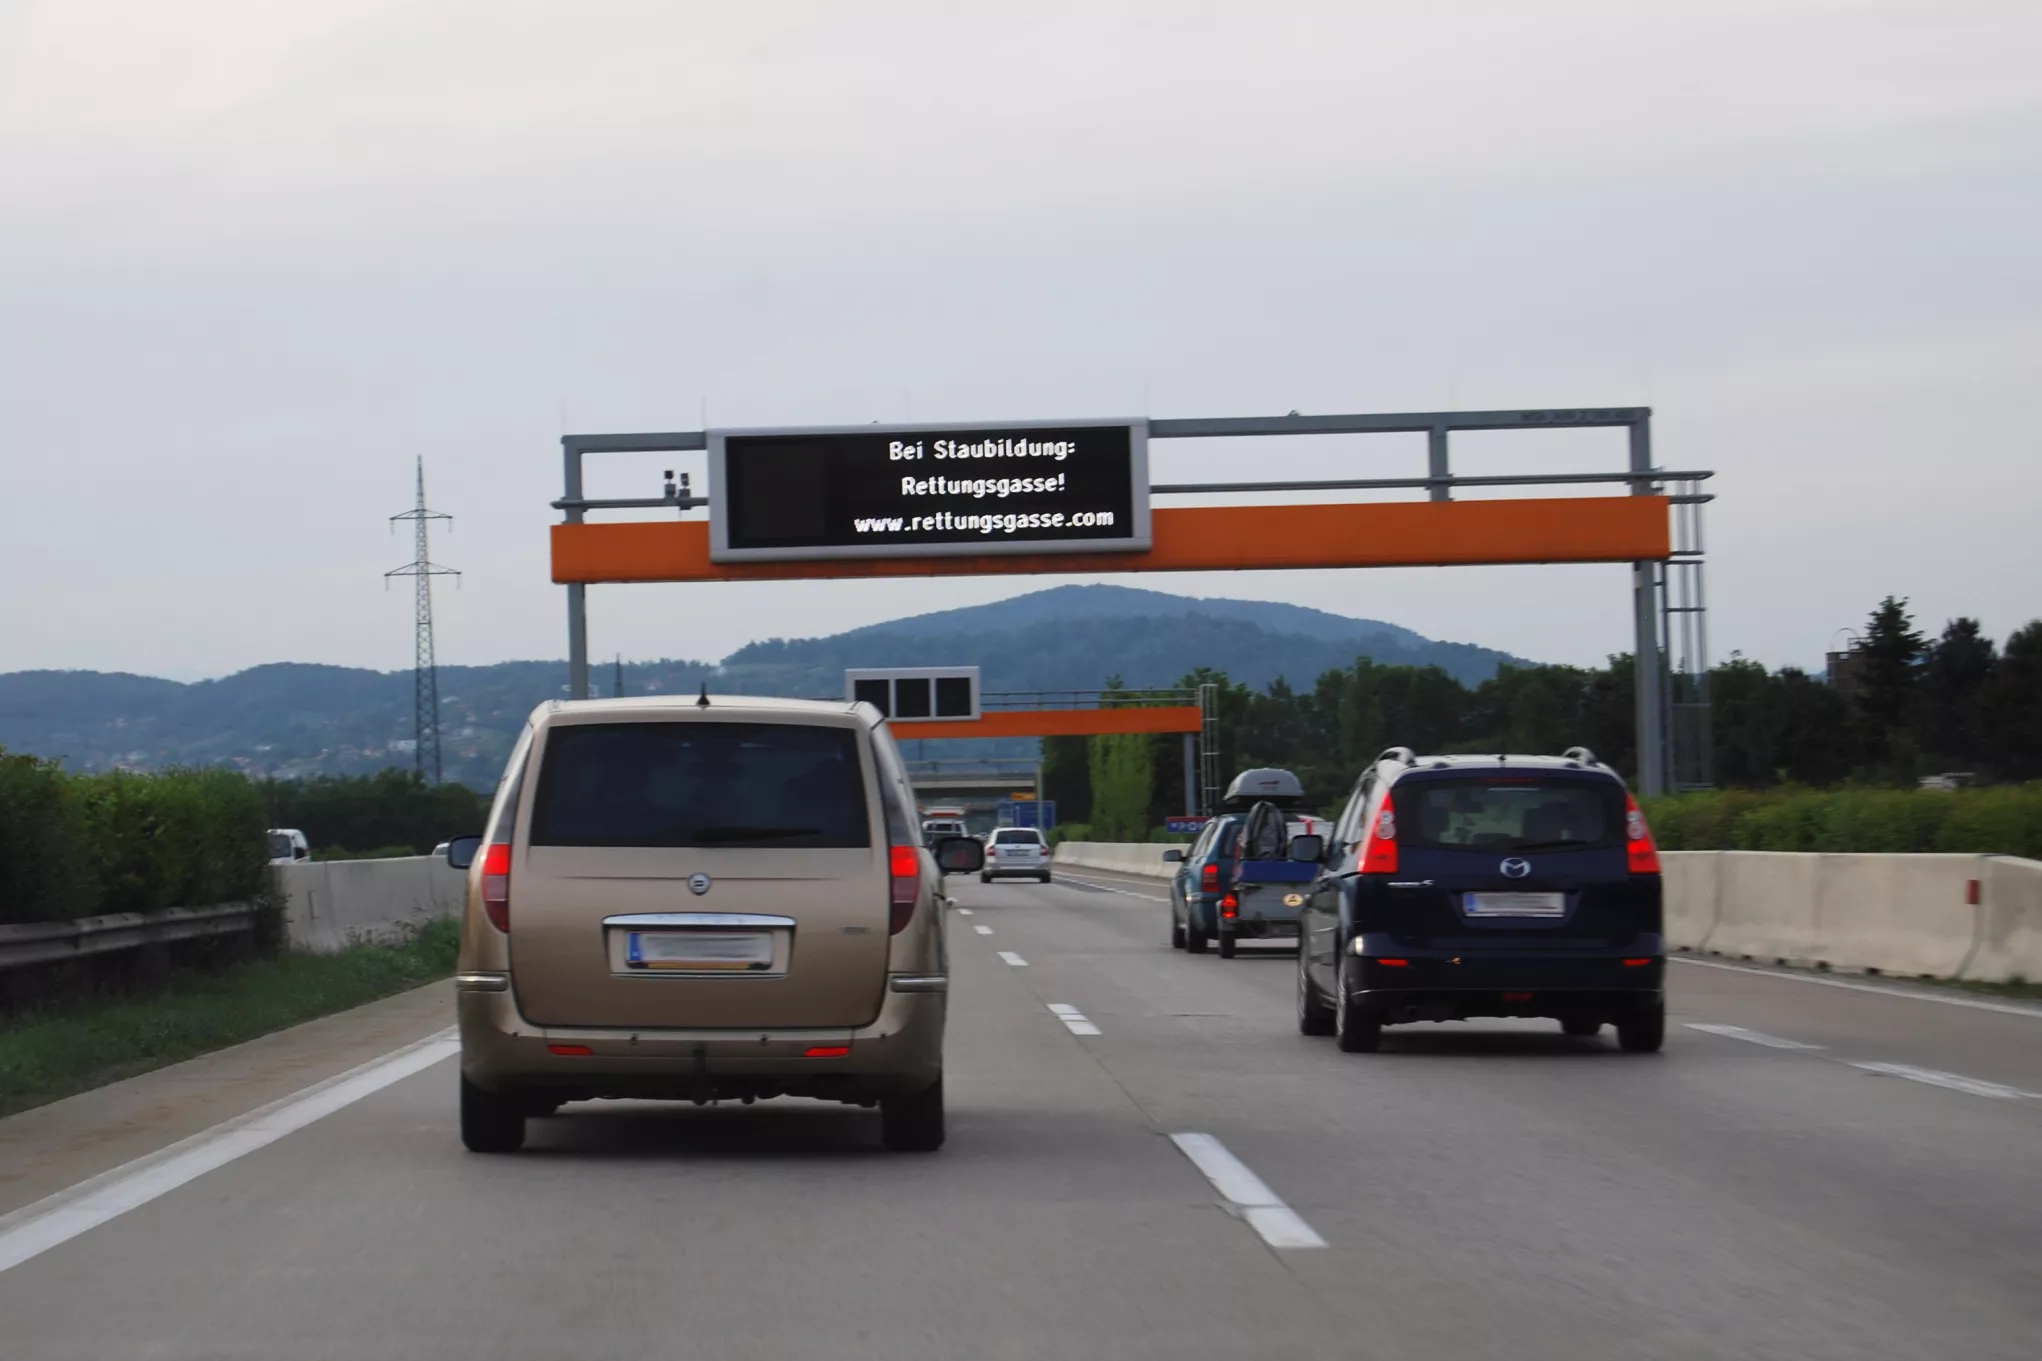 Wechseltextanzeige auf der Autobahn mit dem Hinweis, bei Staubildung die Rettungsgasse zu bilden.